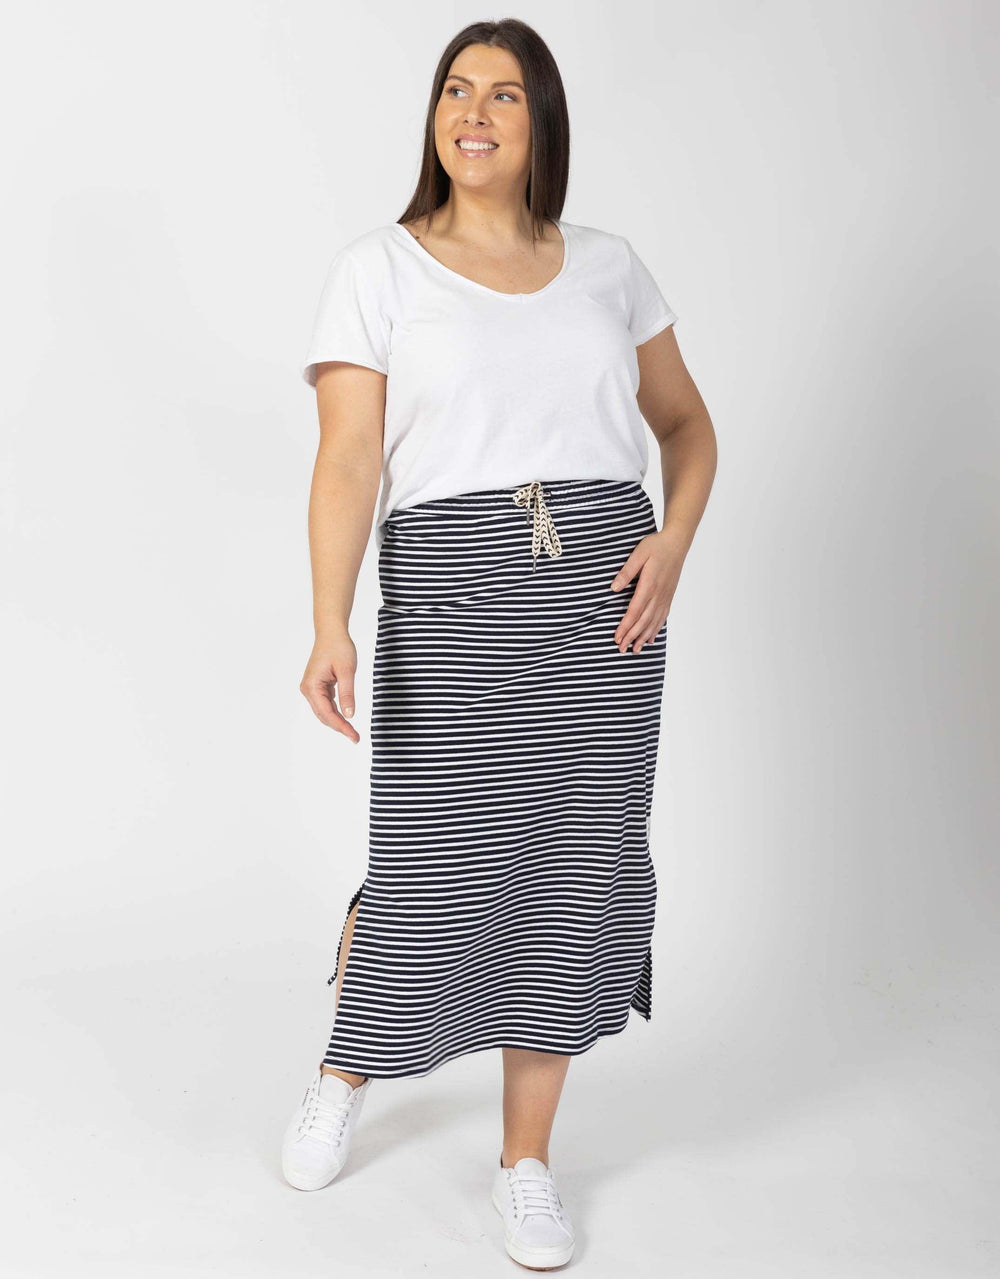 Buy Travel Skirt - Navy/White Stripe Elm for Sale Online Australia